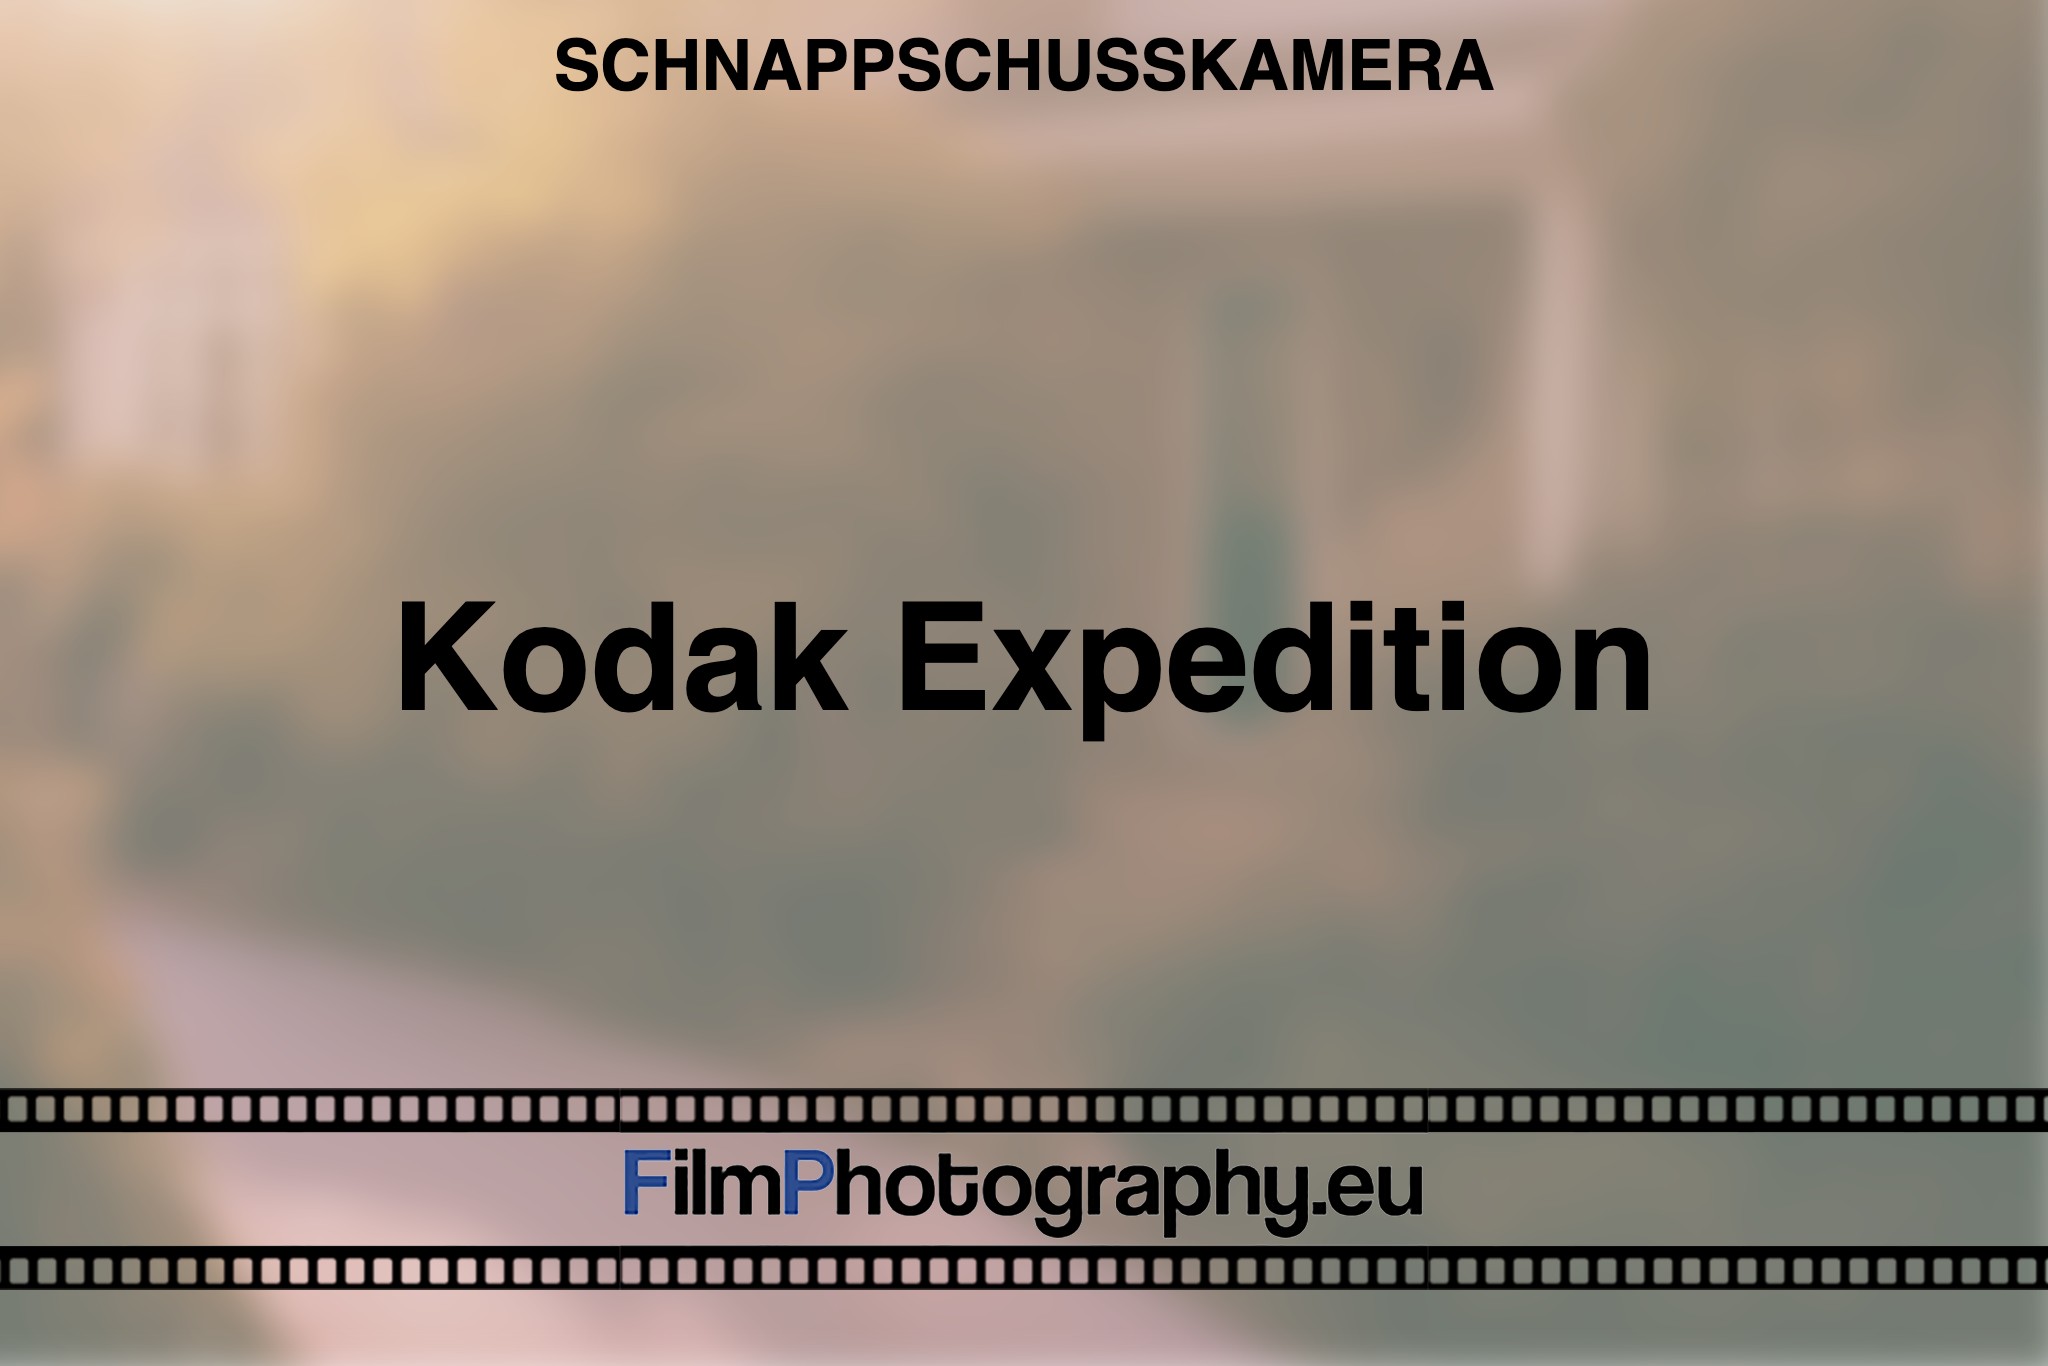 kodak-expedition-schnappschusskamera-bnv